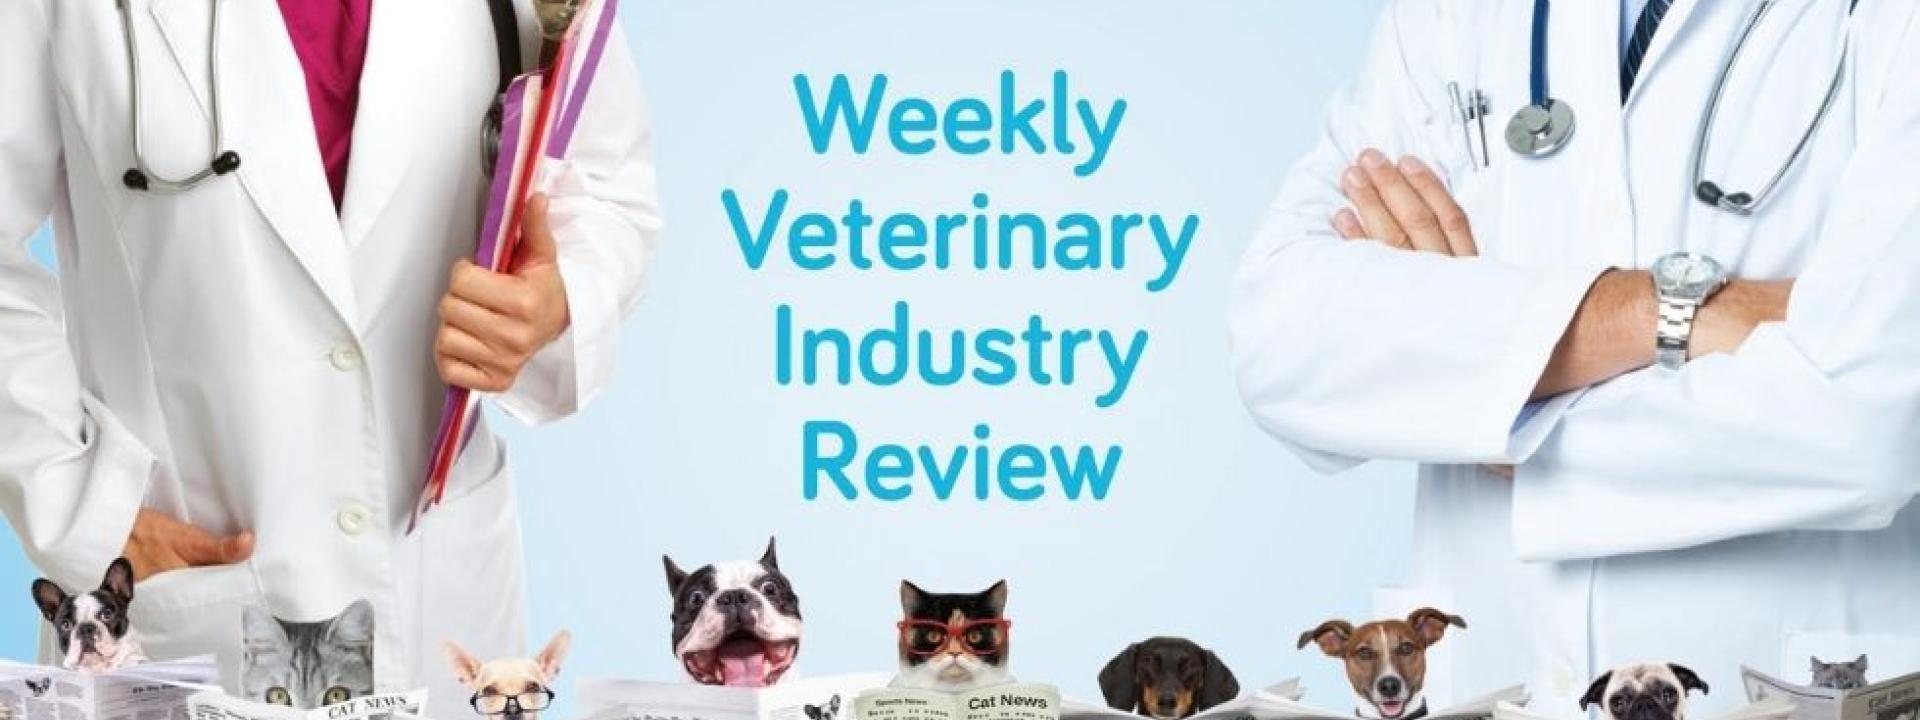 week 8 of Weekly Veterinary Industry Review by GeniusVets